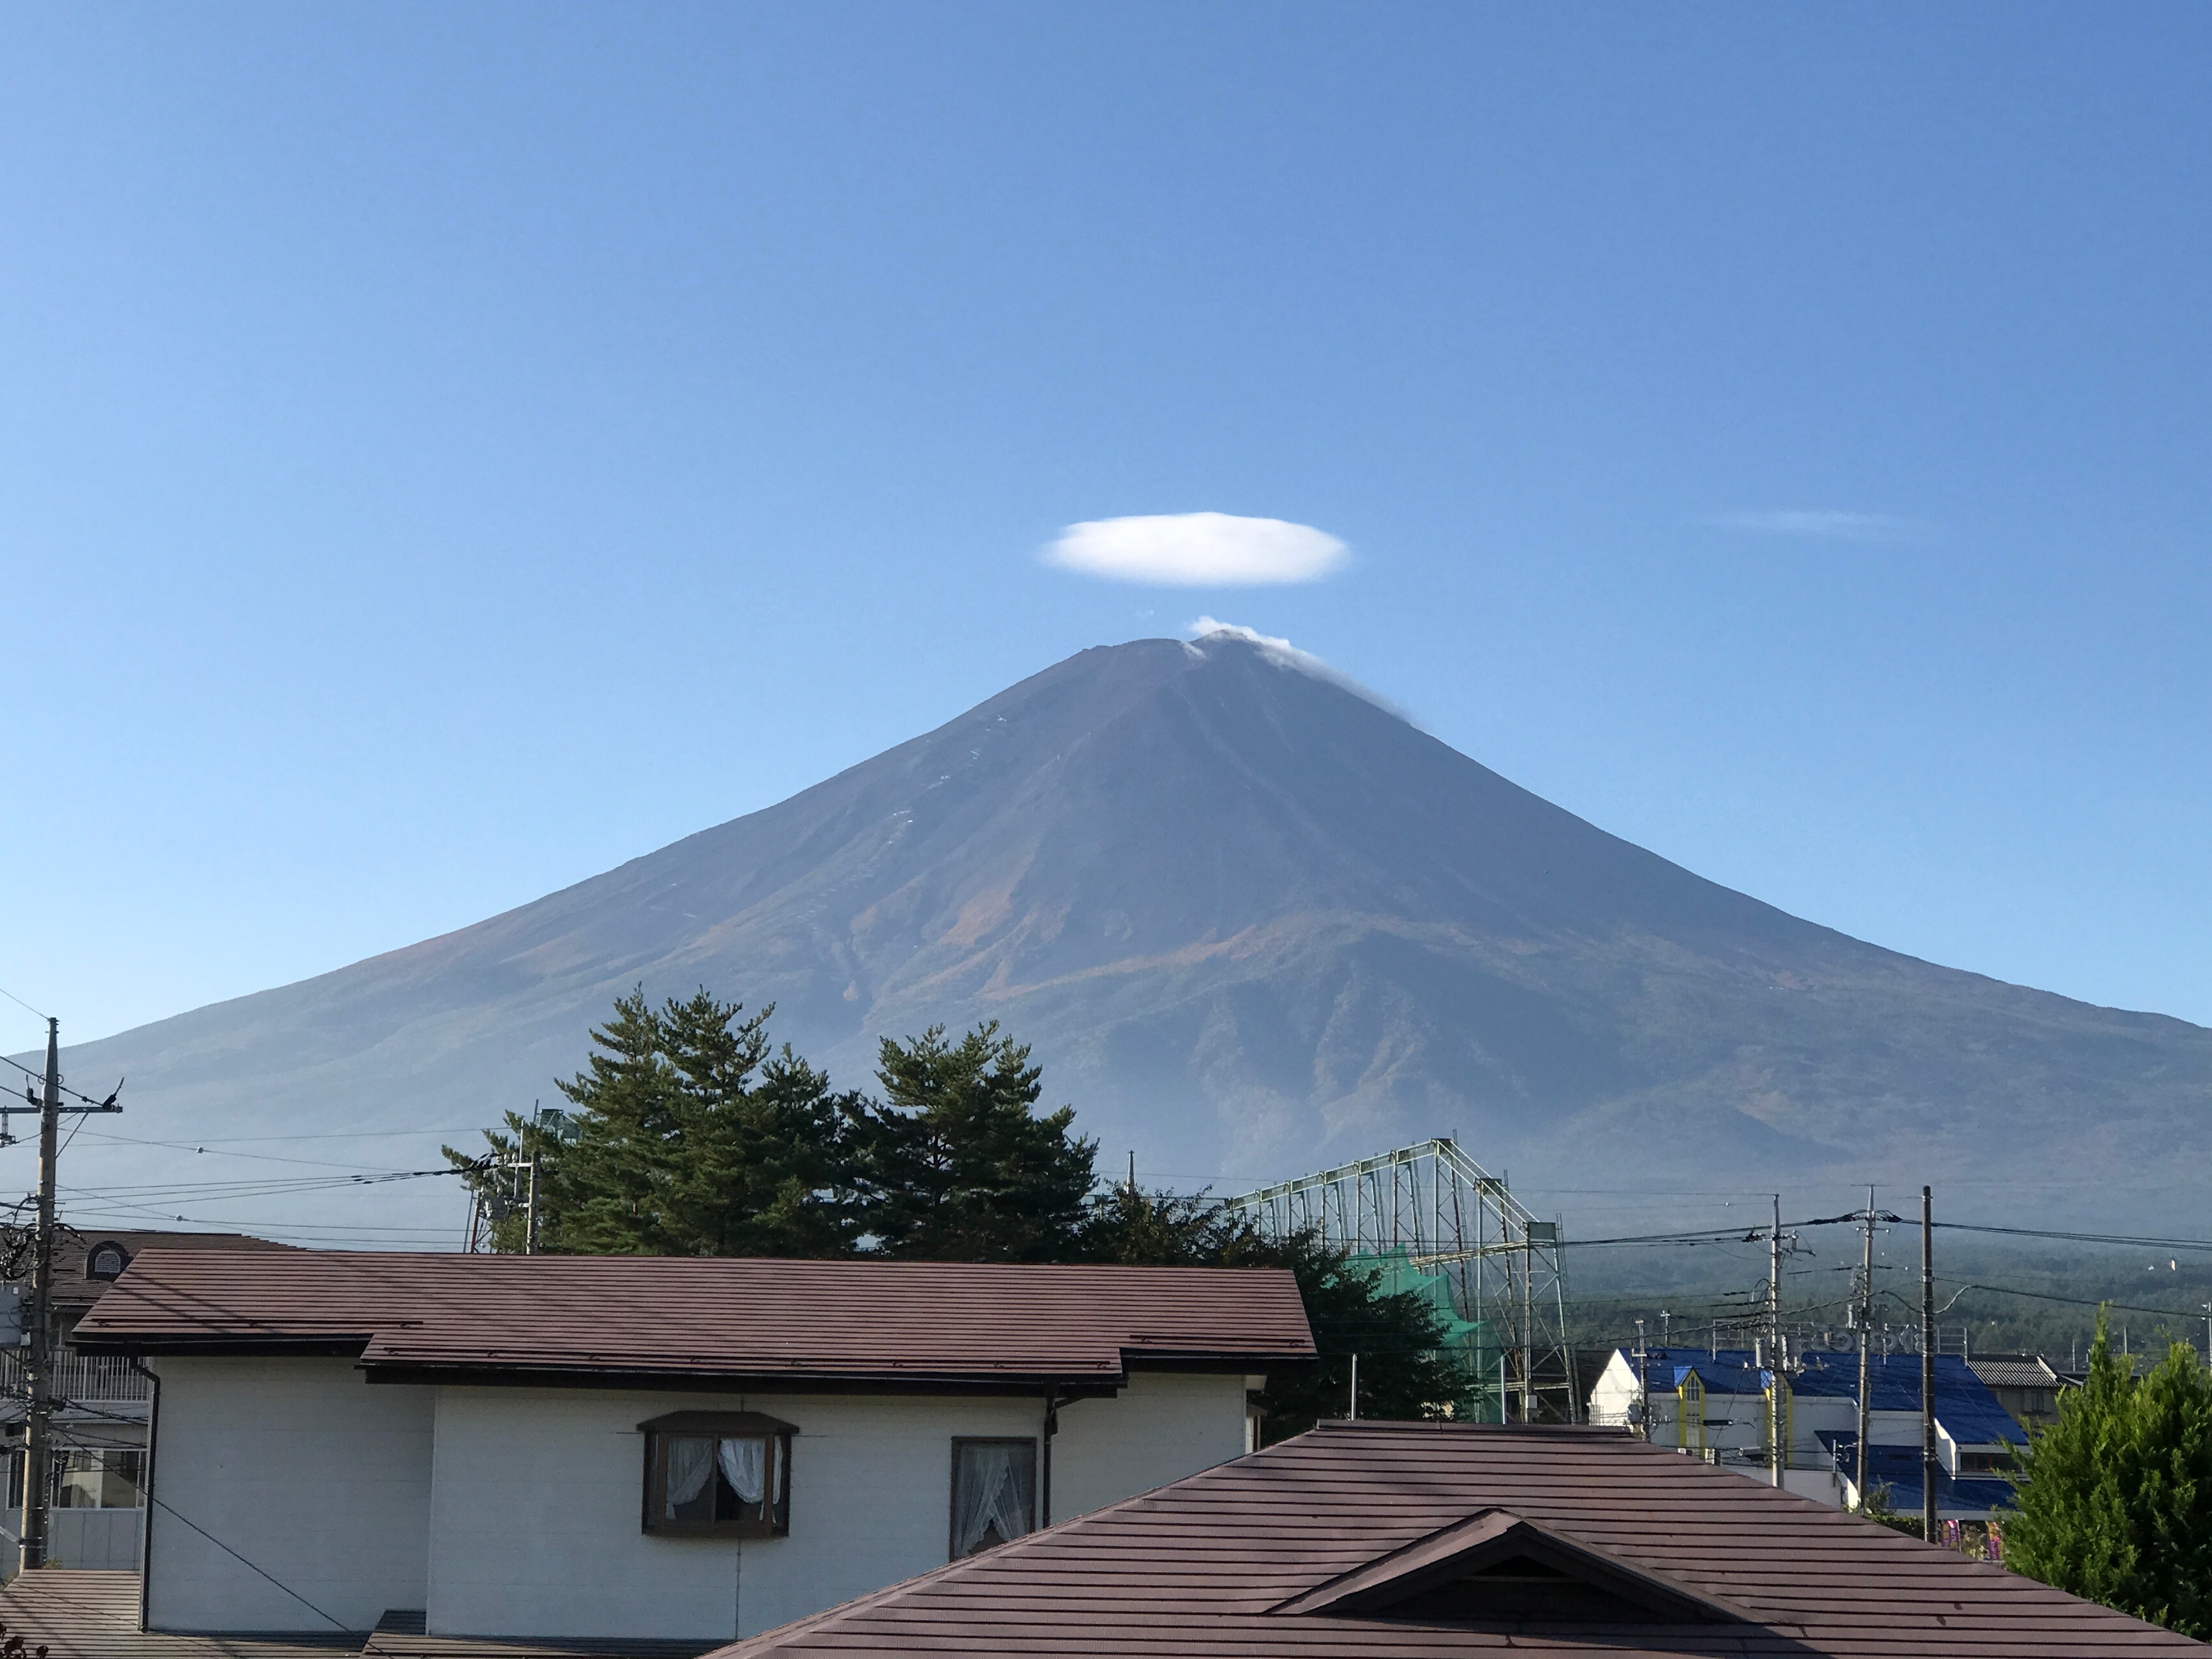 Mt. Fuji in summer